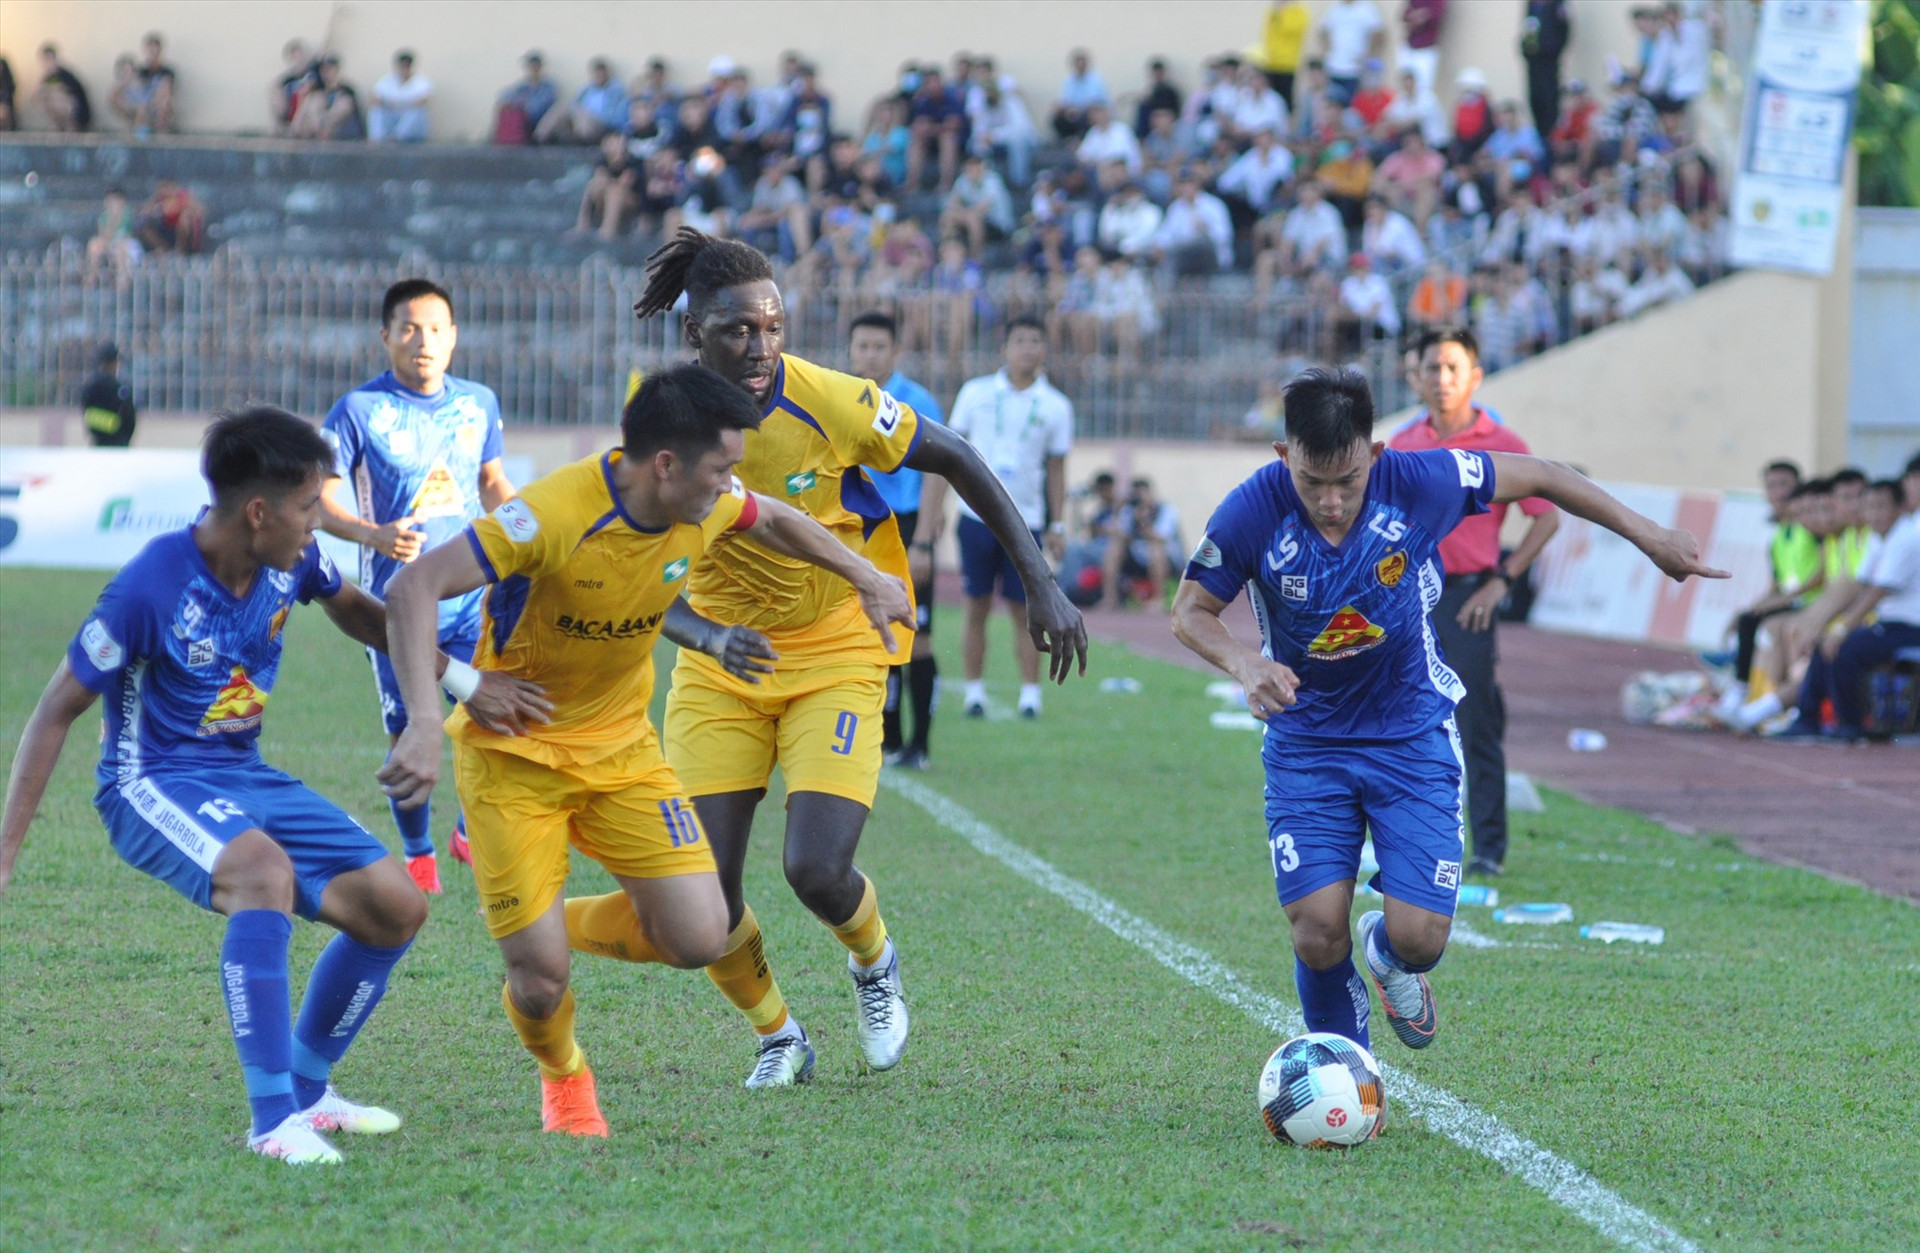 Hồng Sơn (áo xanh) là cầu thủ thi đấu tốt nhất của Quảng Nam với 2 pha dứt điểm suýt thành bàn. Ảnh: A.S